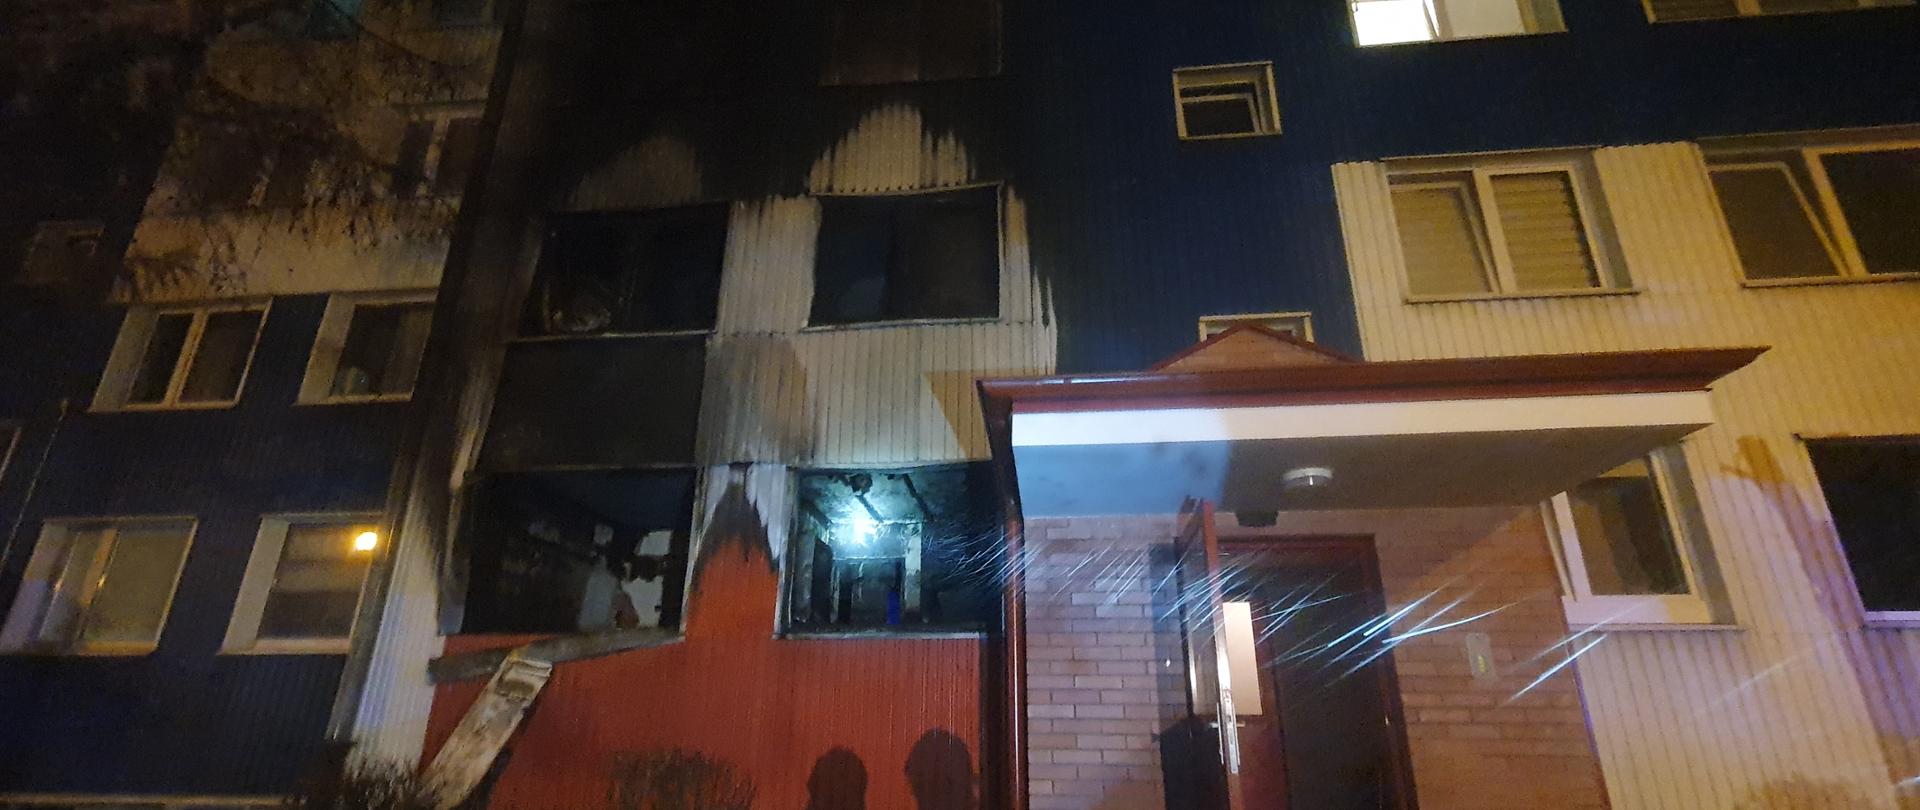 Pożar mieszkania w bloku wielorodzinnym w Kleosinie